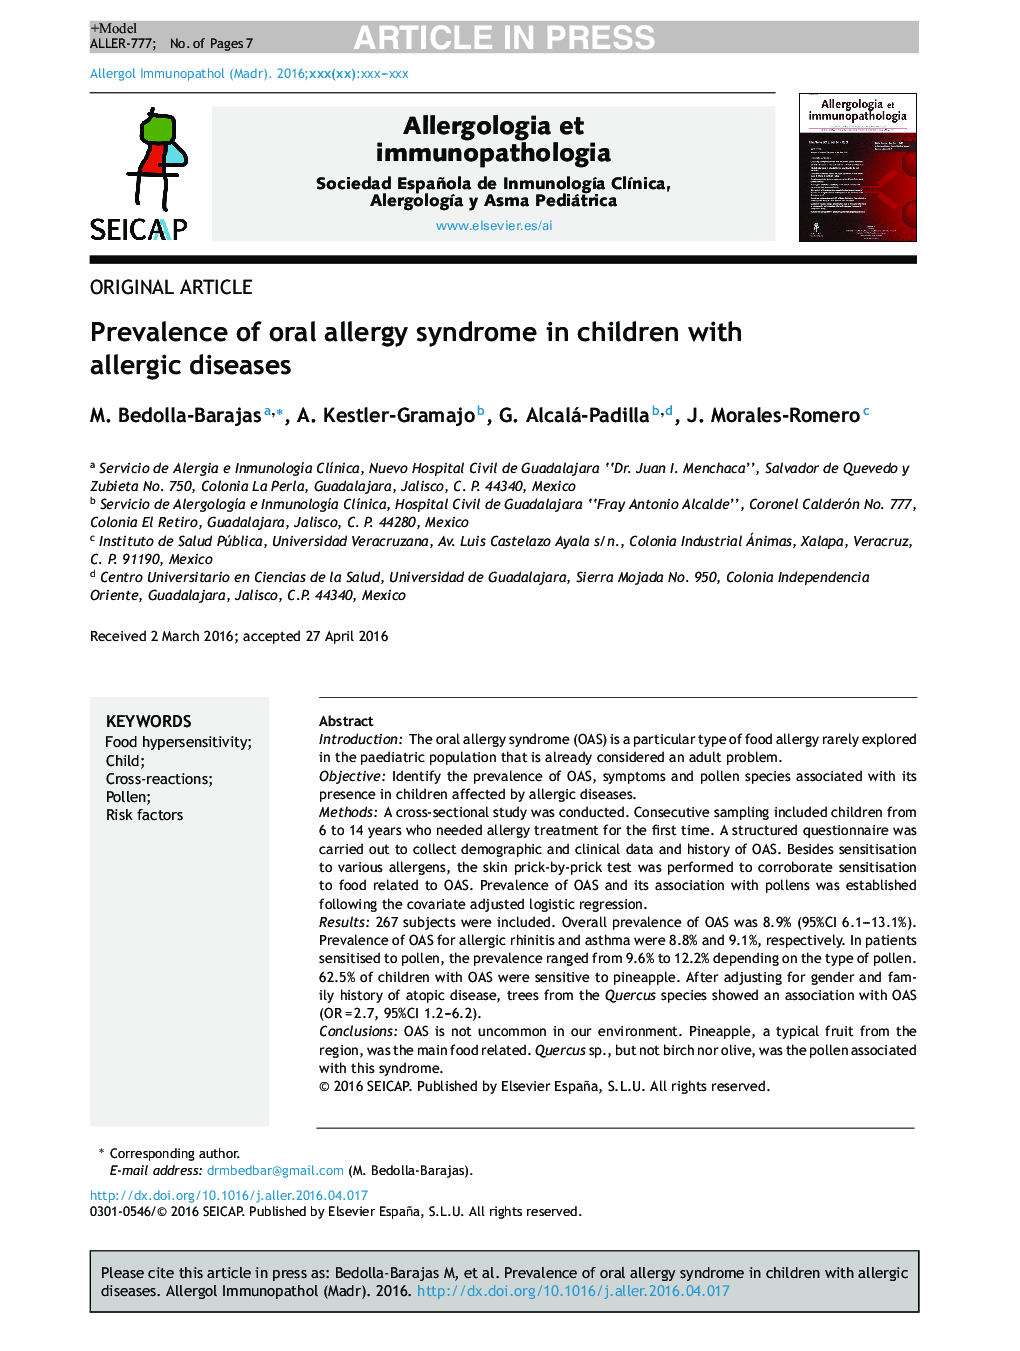 شیوع سندرم آلرژی دهان در کودکان مبتلا به بیماریهای آلرژیک 